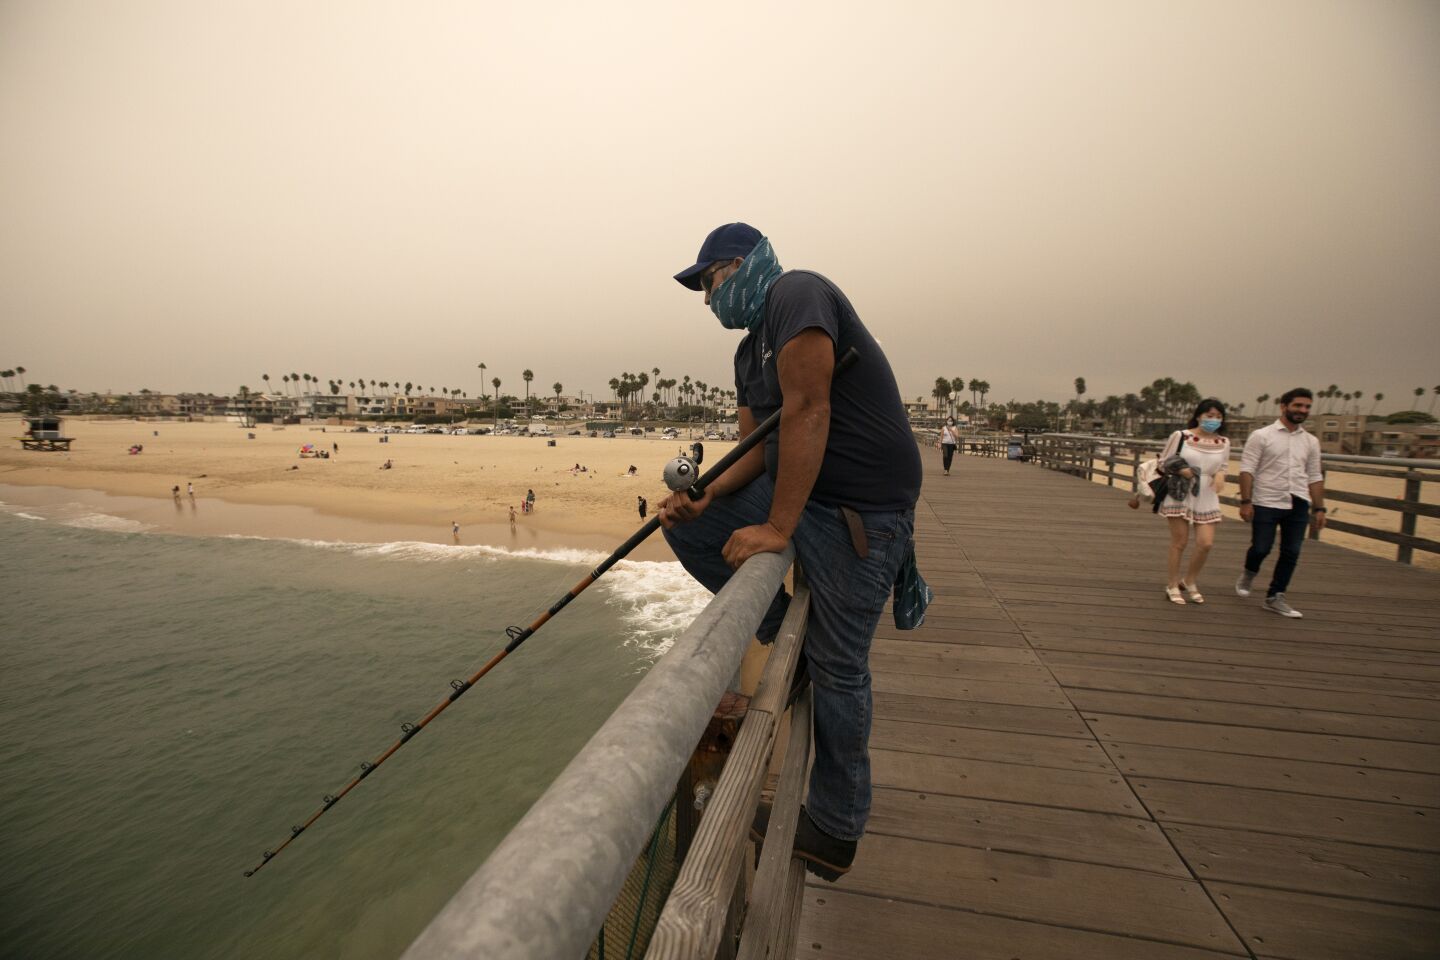 Fabian Ortez of Riverside enjoys fishing off the pier in Seal Beach.